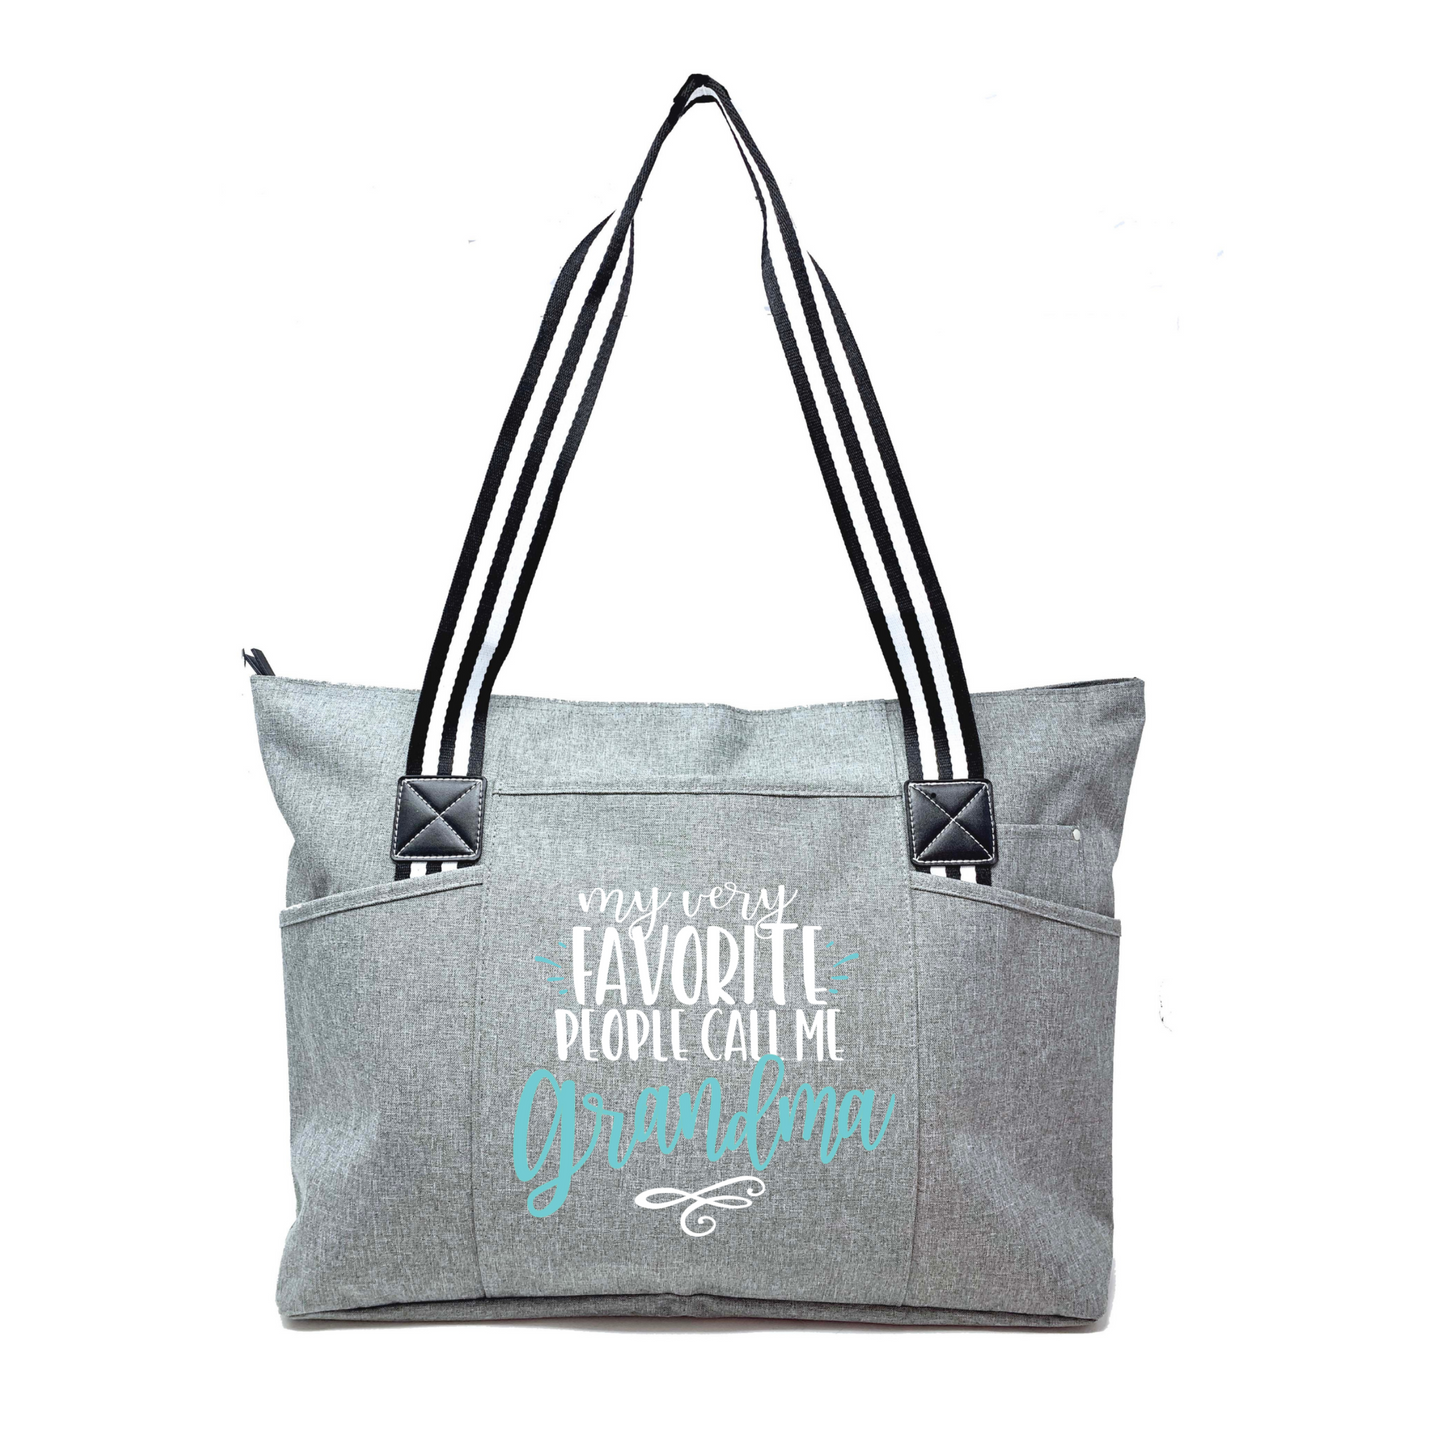 Favorite People Call Me Grandma Tessa Gray Tote Bag for Grandmothers - Outlet Deal Utah